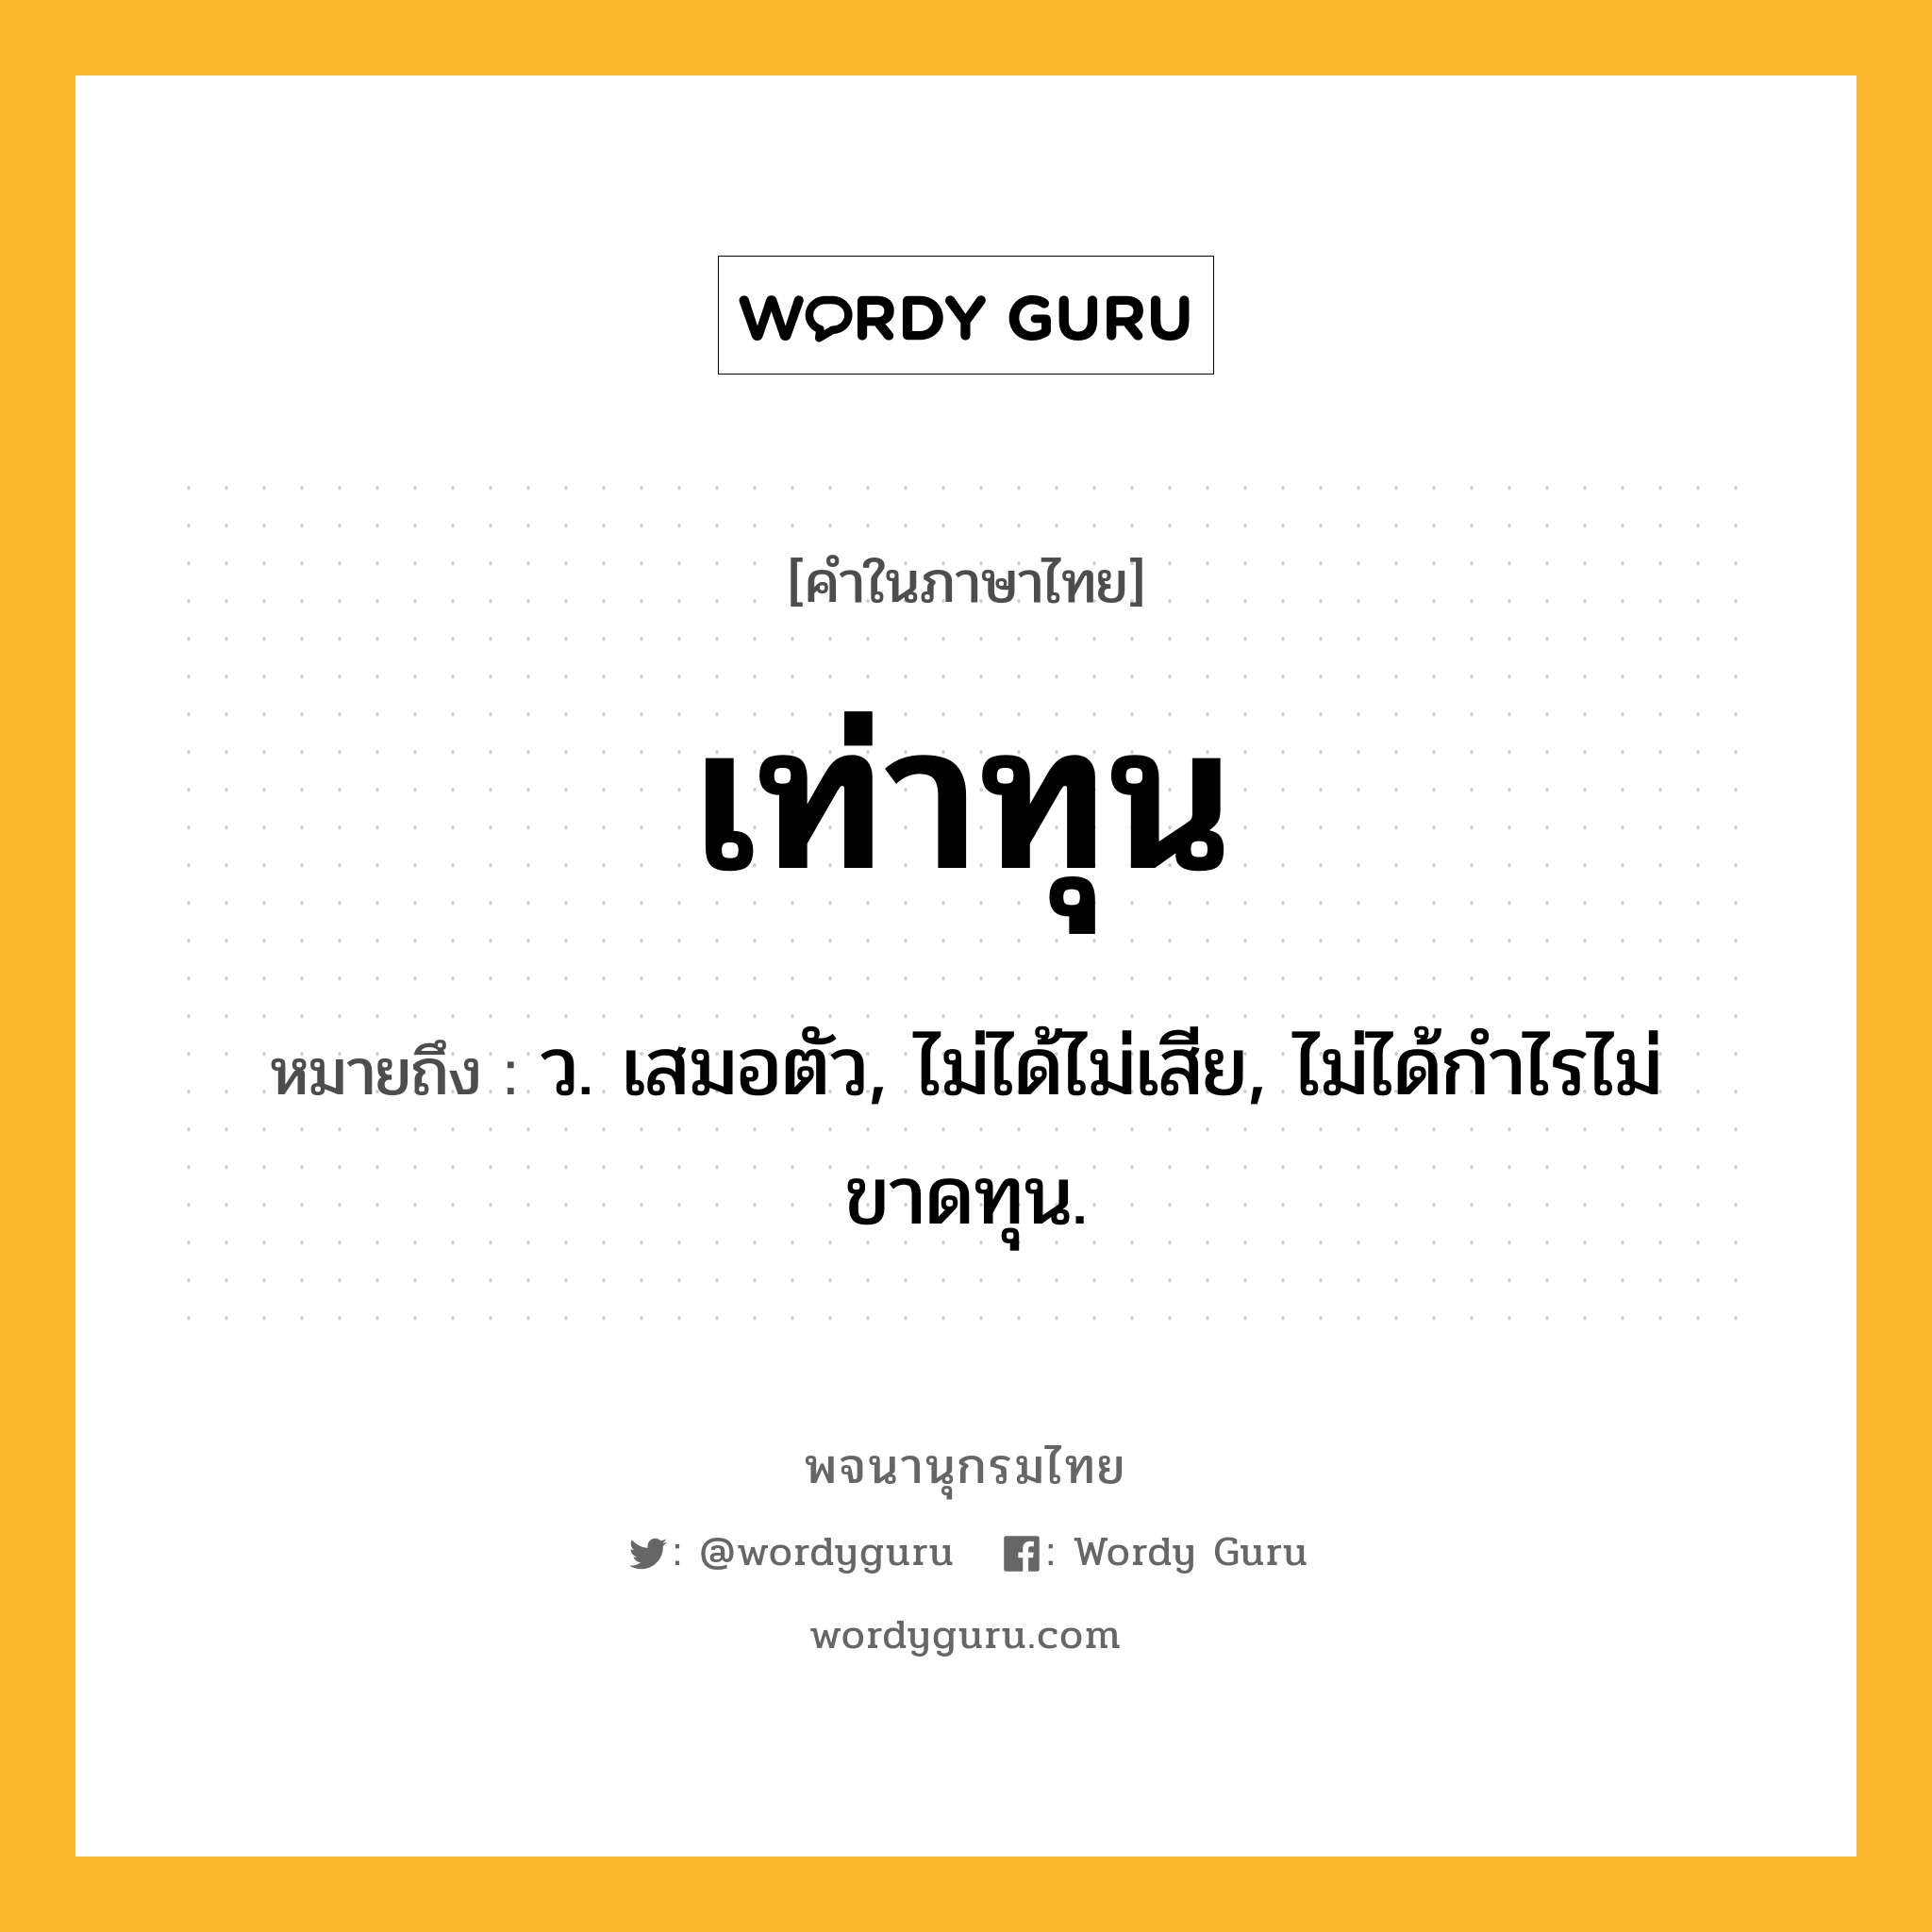 เท่าทุน หมายถึงอะไร?, คำในภาษาไทย เท่าทุน หมายถึง ว. เสมอตัว, ไม่ได้ไม่เสีย, ไม่ได้กําไรไม่ขาดทุน.